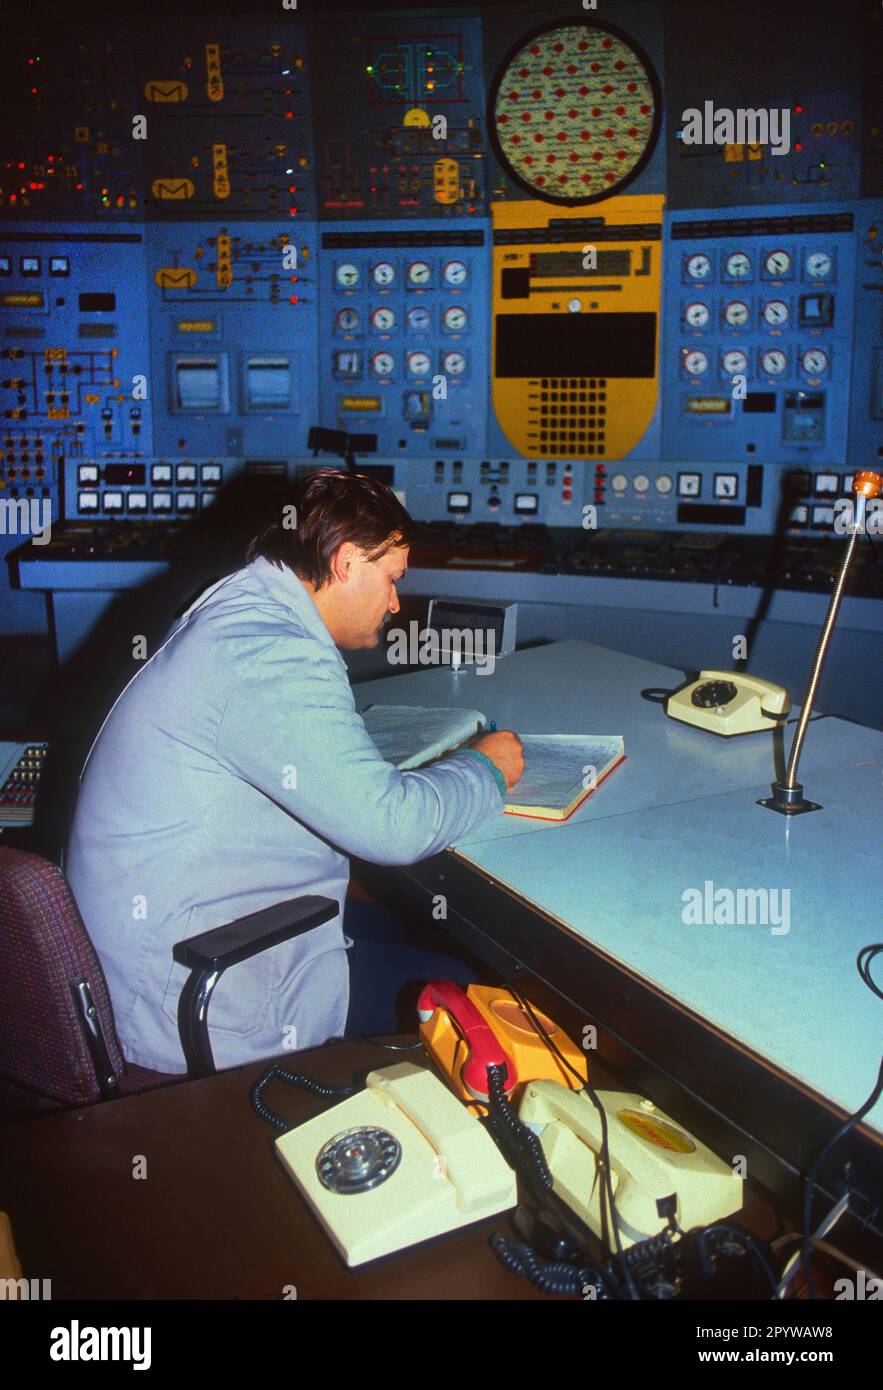 Bulgarien, Kosloduj, 13.11.1991 Kernkraftwerk Kosloduj Foto: Techniker im Reaktorkontrollraum von Block 2 des Kernkraftwerks Kosloduj in Bulgarien. Die Blöcke 1 und 2 wurden bereits Ende 2002 abgeschaltet. [Maschinelle Übersetzung] Stockfoto